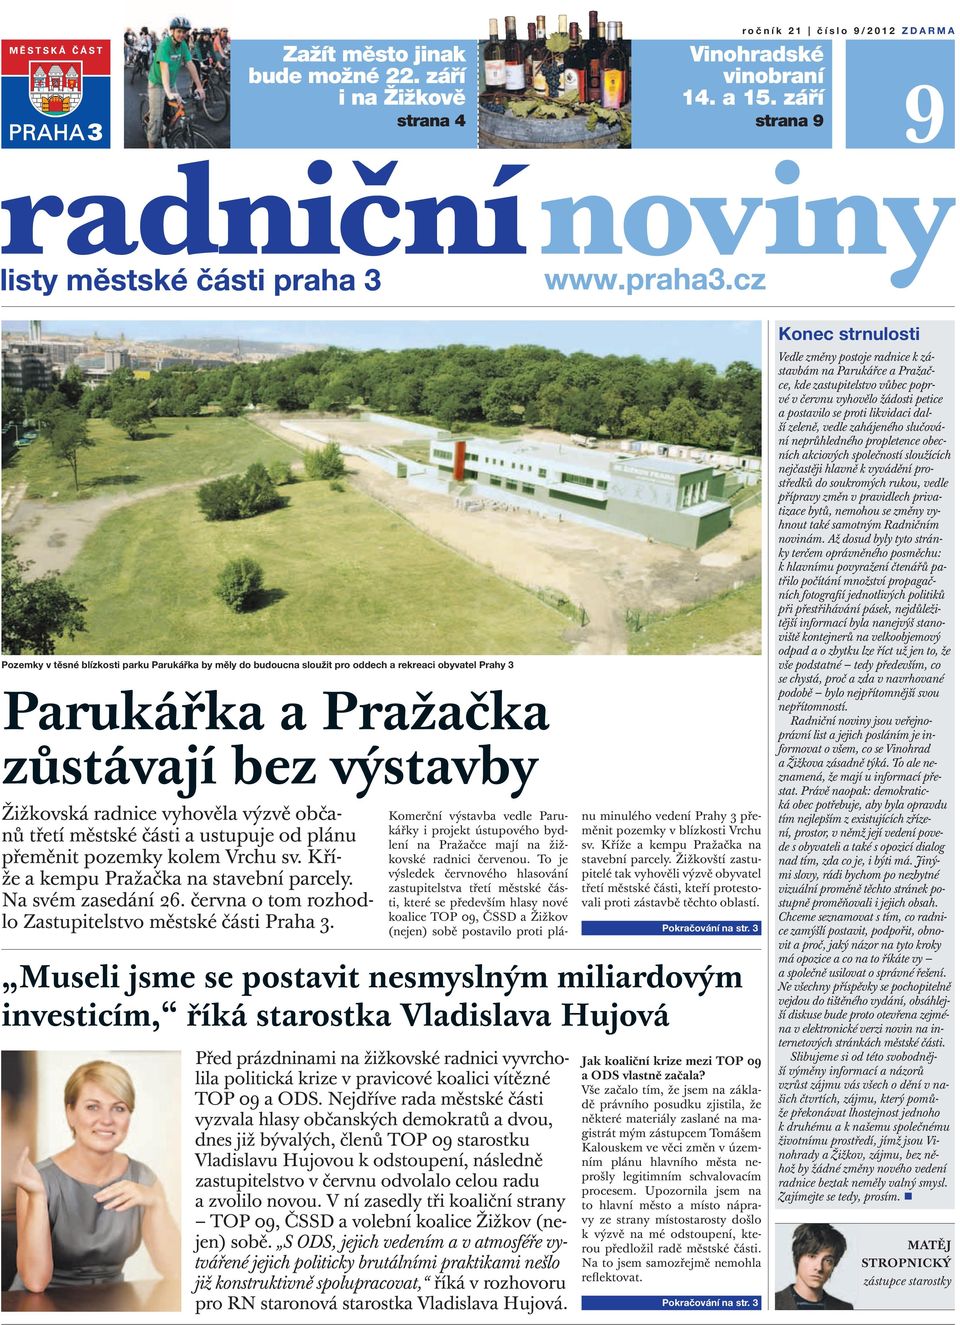 občanů třetí městské části a ustupuje od plánu přeměnit pozemky kolem Vrchu sv. Kříže a kempu Pražačka na stavební parcely. Na svém zasedání 26.